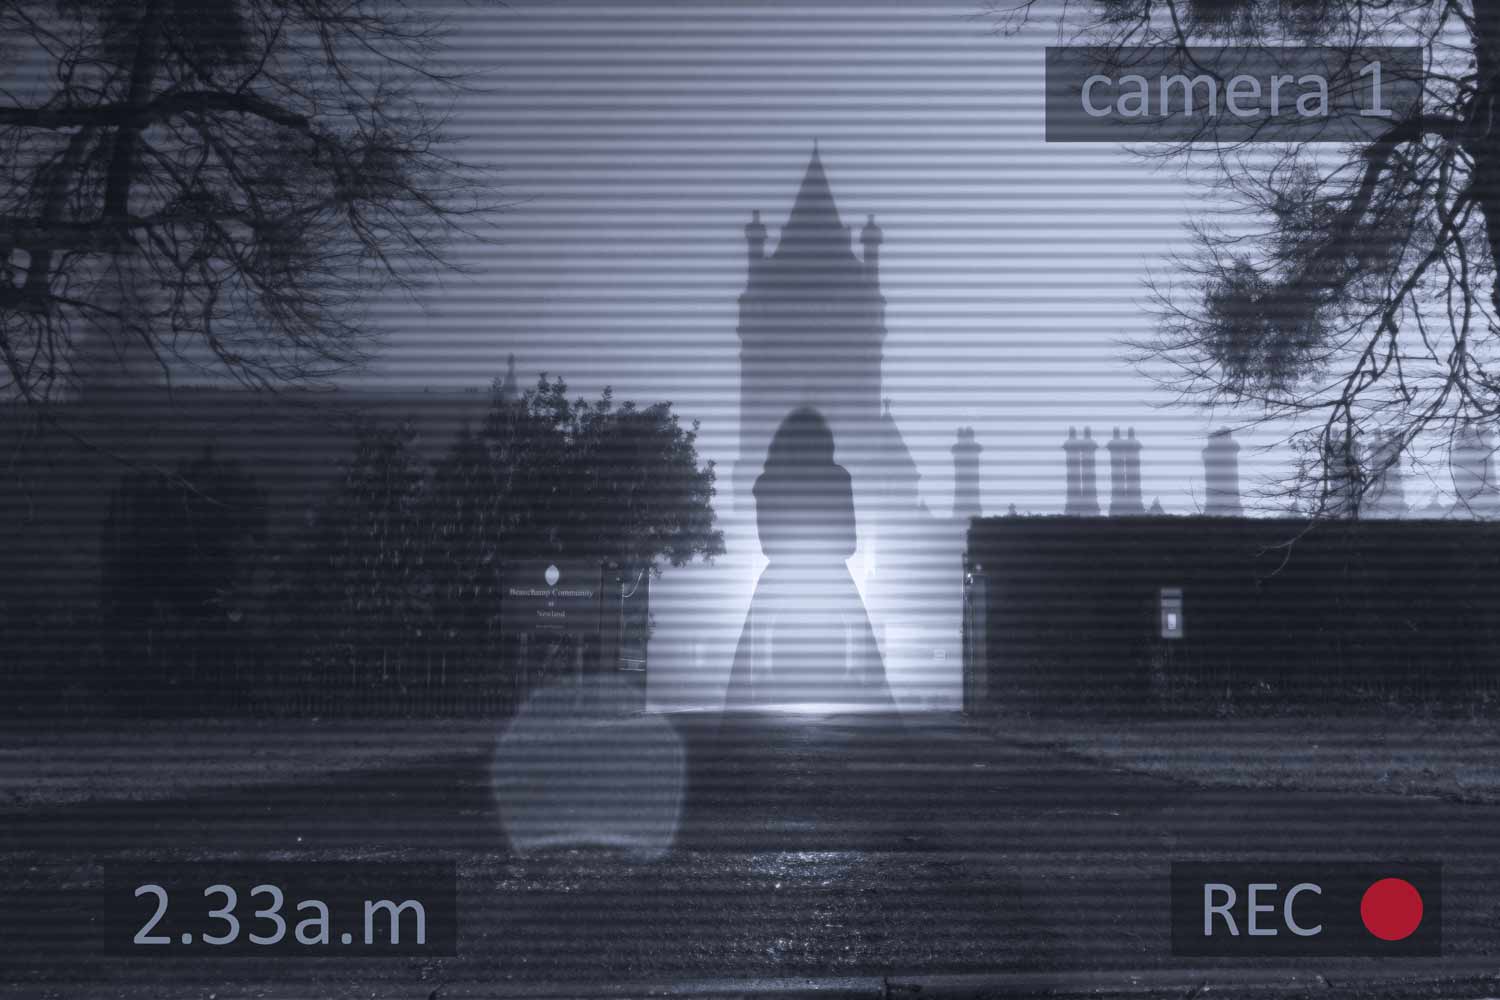 How Do You Prevent Ghosting on CCTV Cameras?